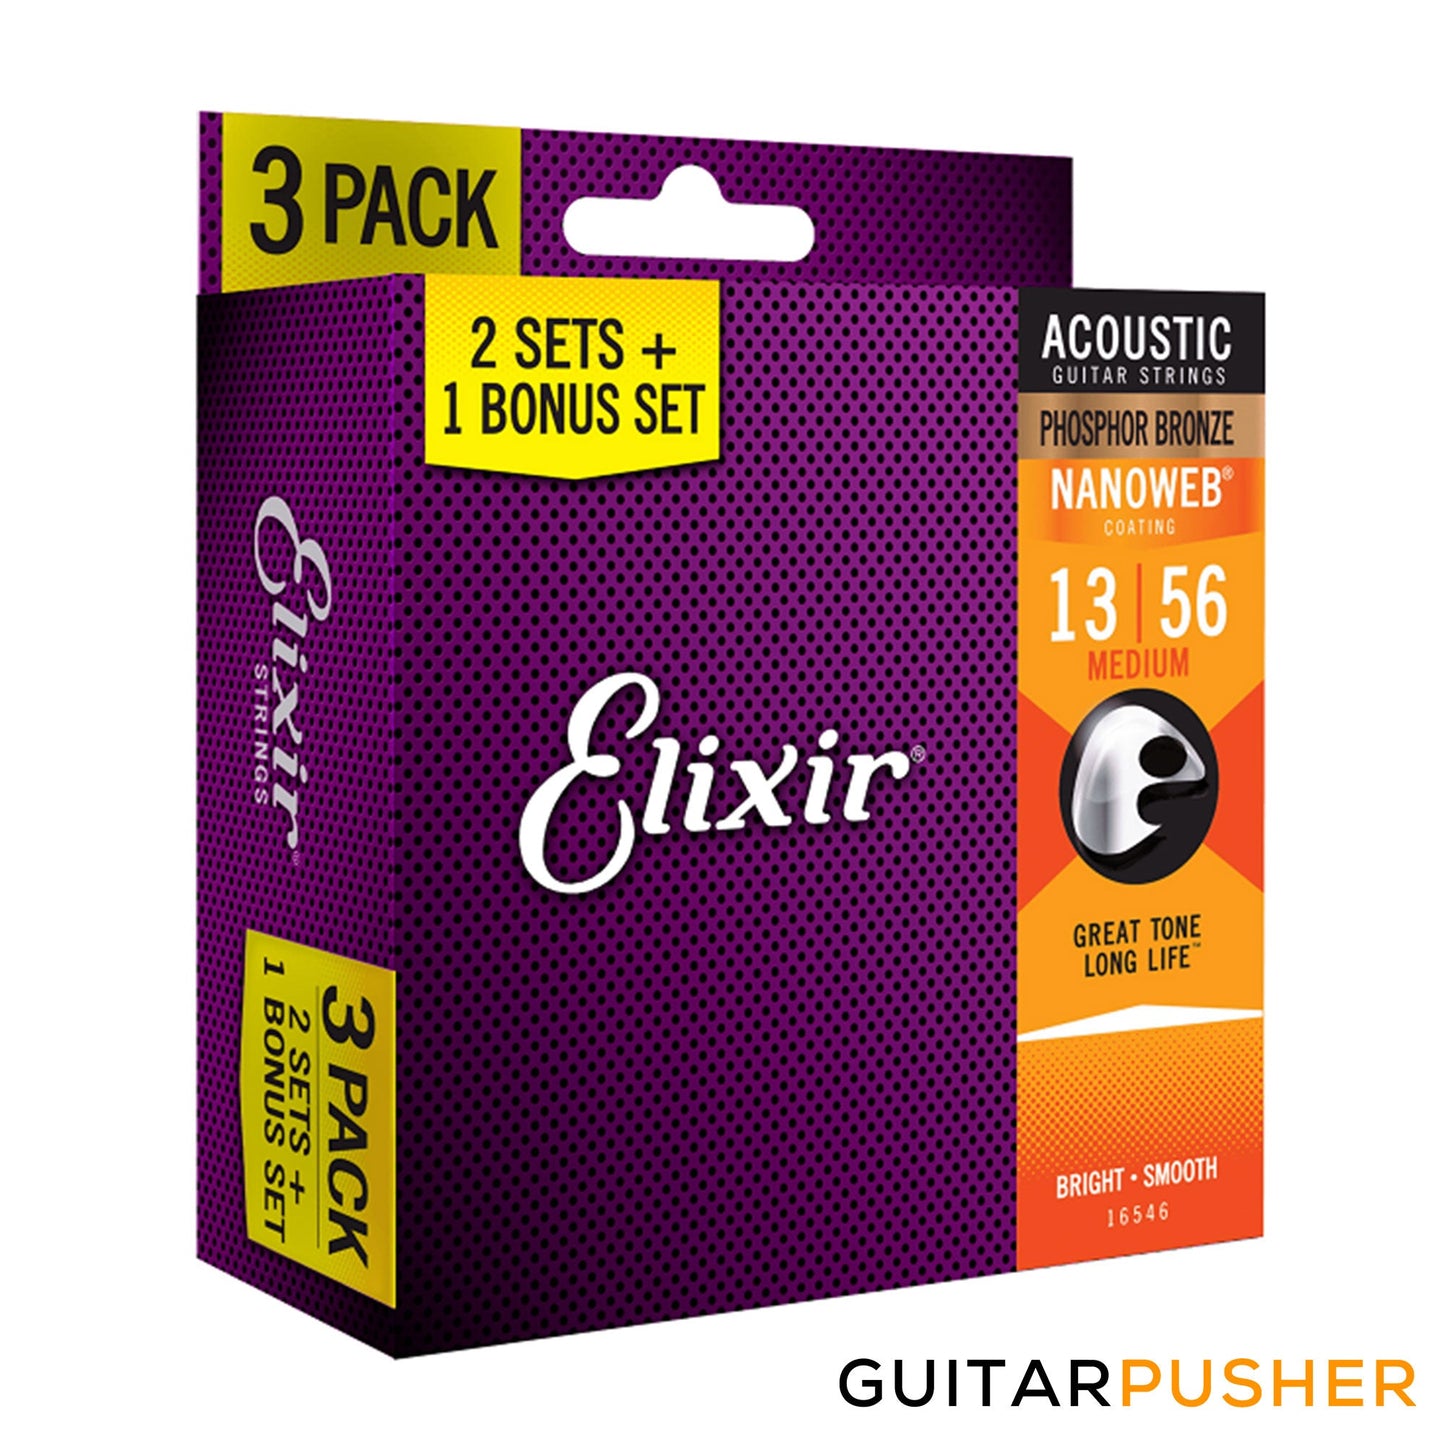 Elixir Acoustic Phosphor Bronze Acoustic Guitar Strings with Nanoweb Coating - Medium (13 17 26 35 45 56) 3-Pack